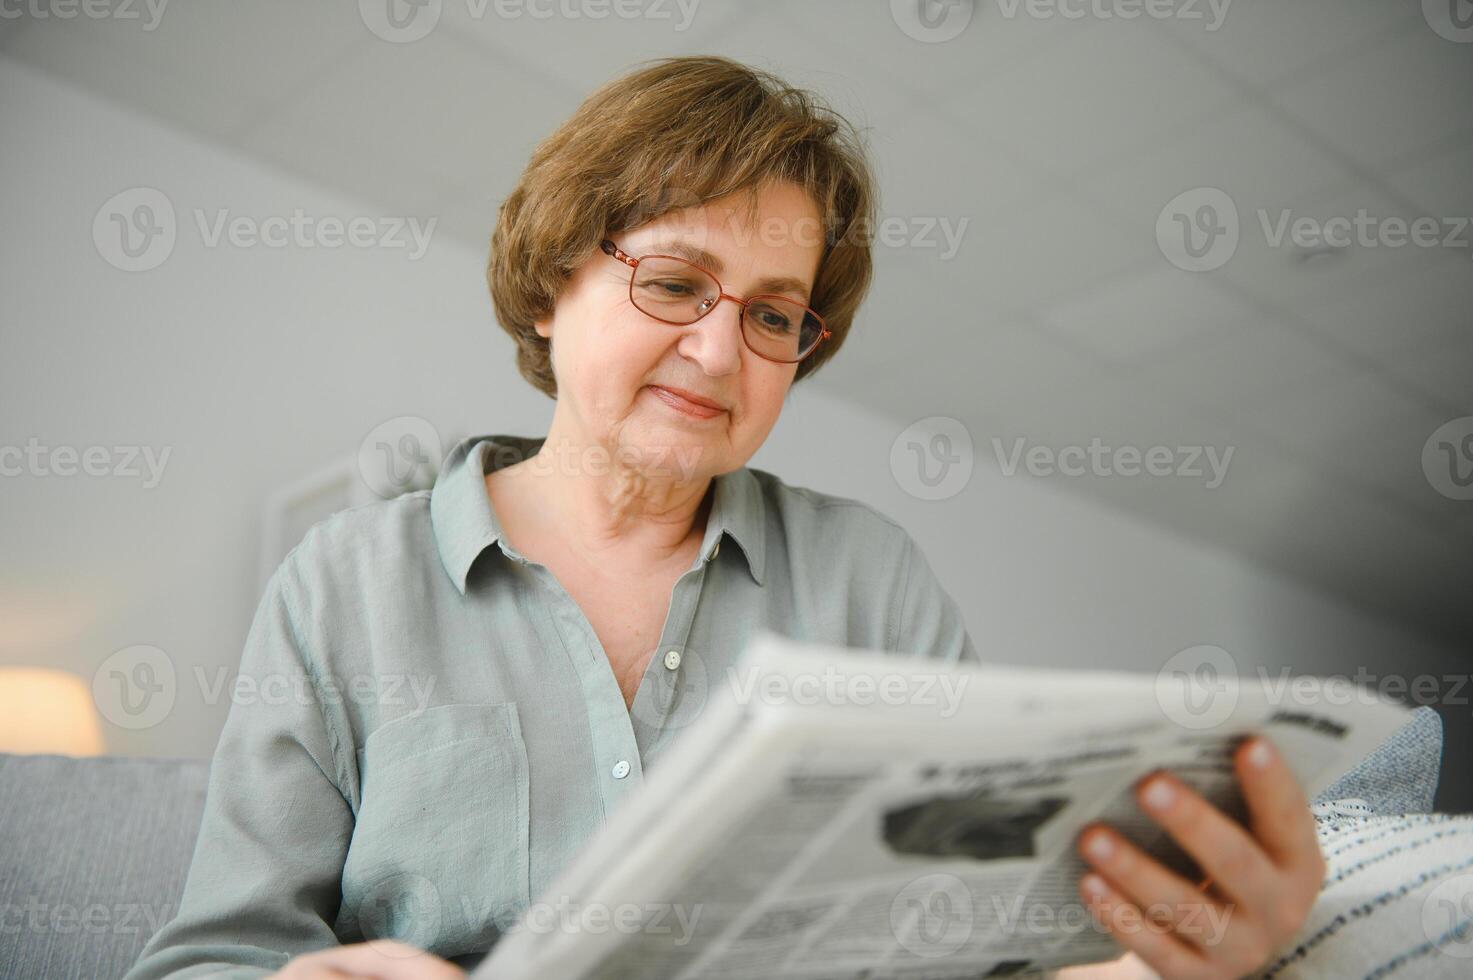 età e persone concetto - contento anziano donna lettura giornale a casa foto